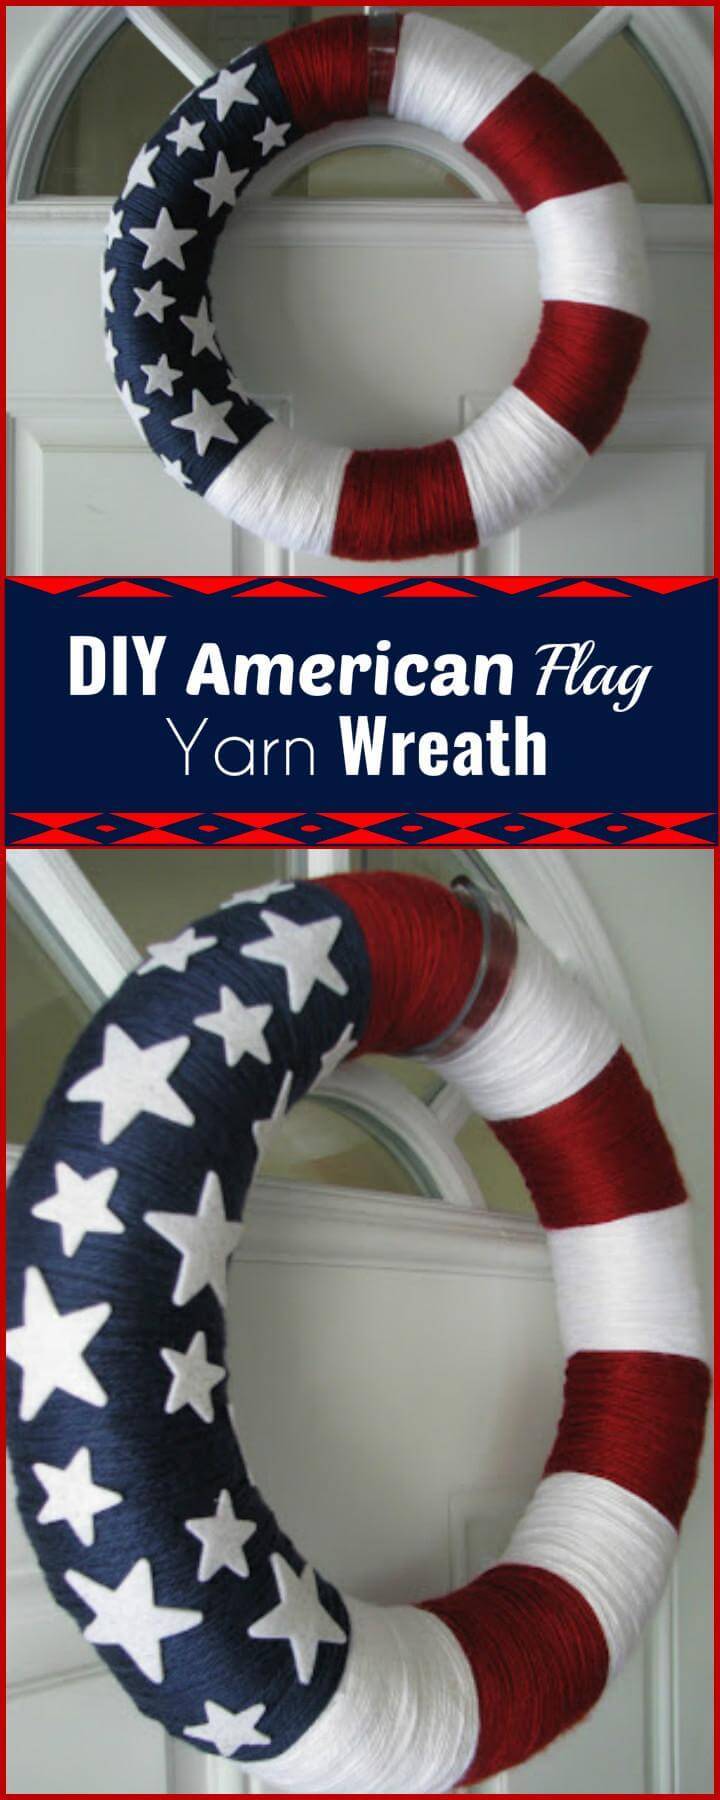 DIY American flag yarn wreath